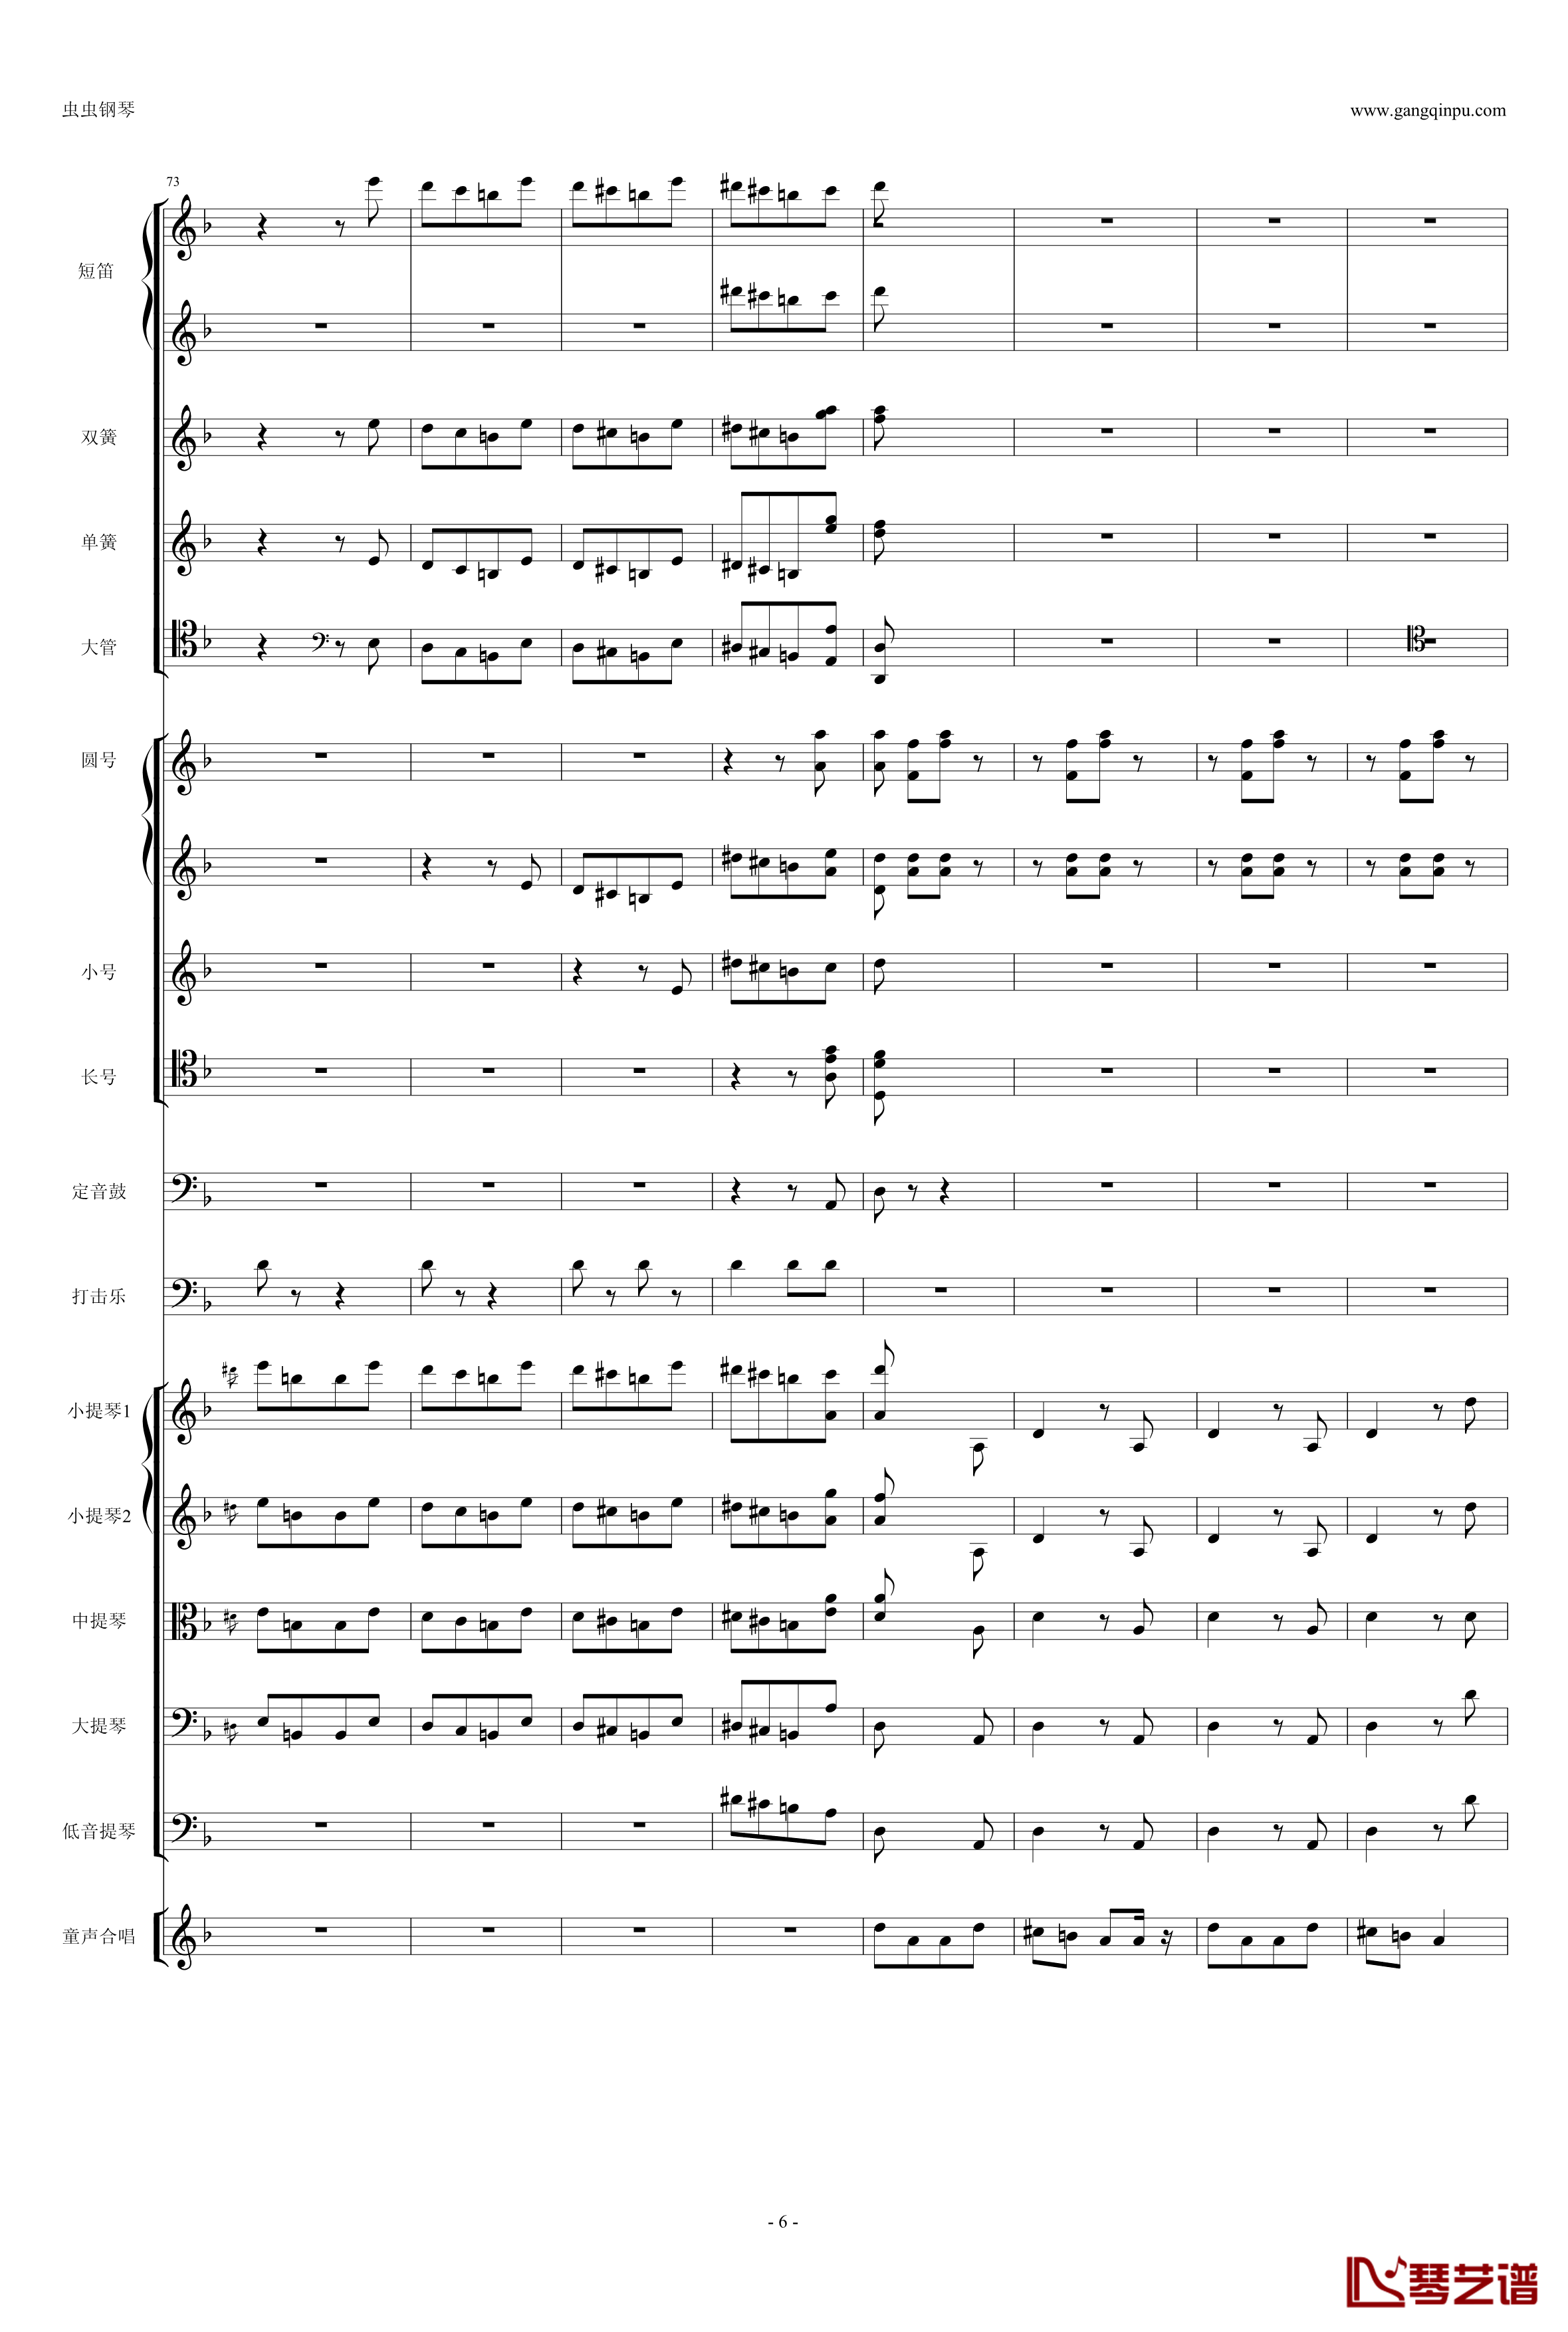 歌剧《卡门》选段钢琴谱-我们和士兵在一起-比才-Bizet-超诙谐6